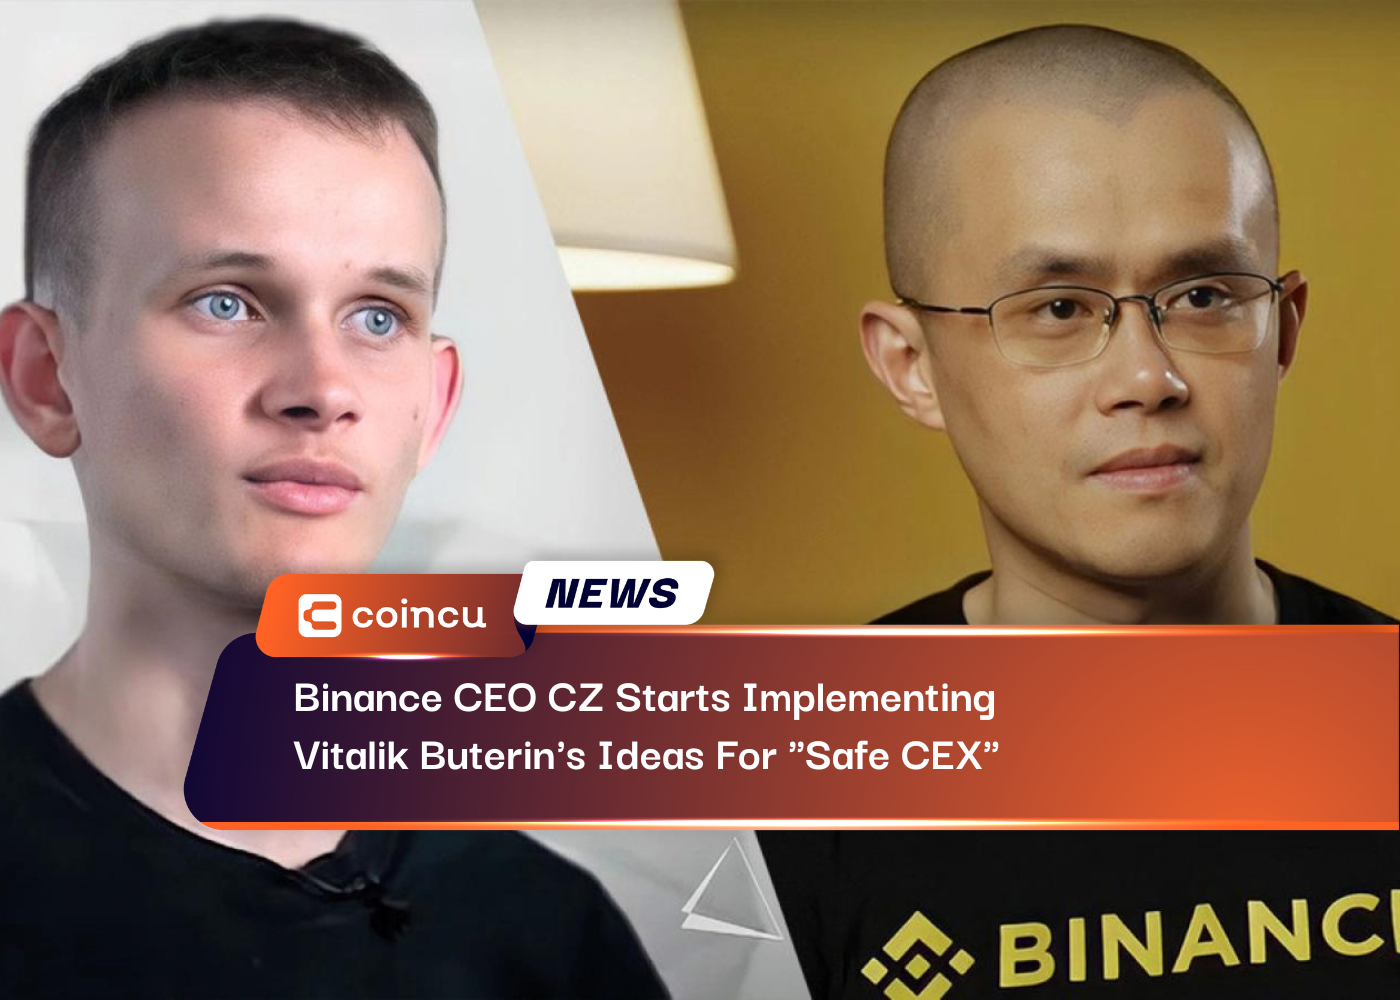 El CEO de Binance, CZ, comienza a implementar las ideas de Vitalik Buterins